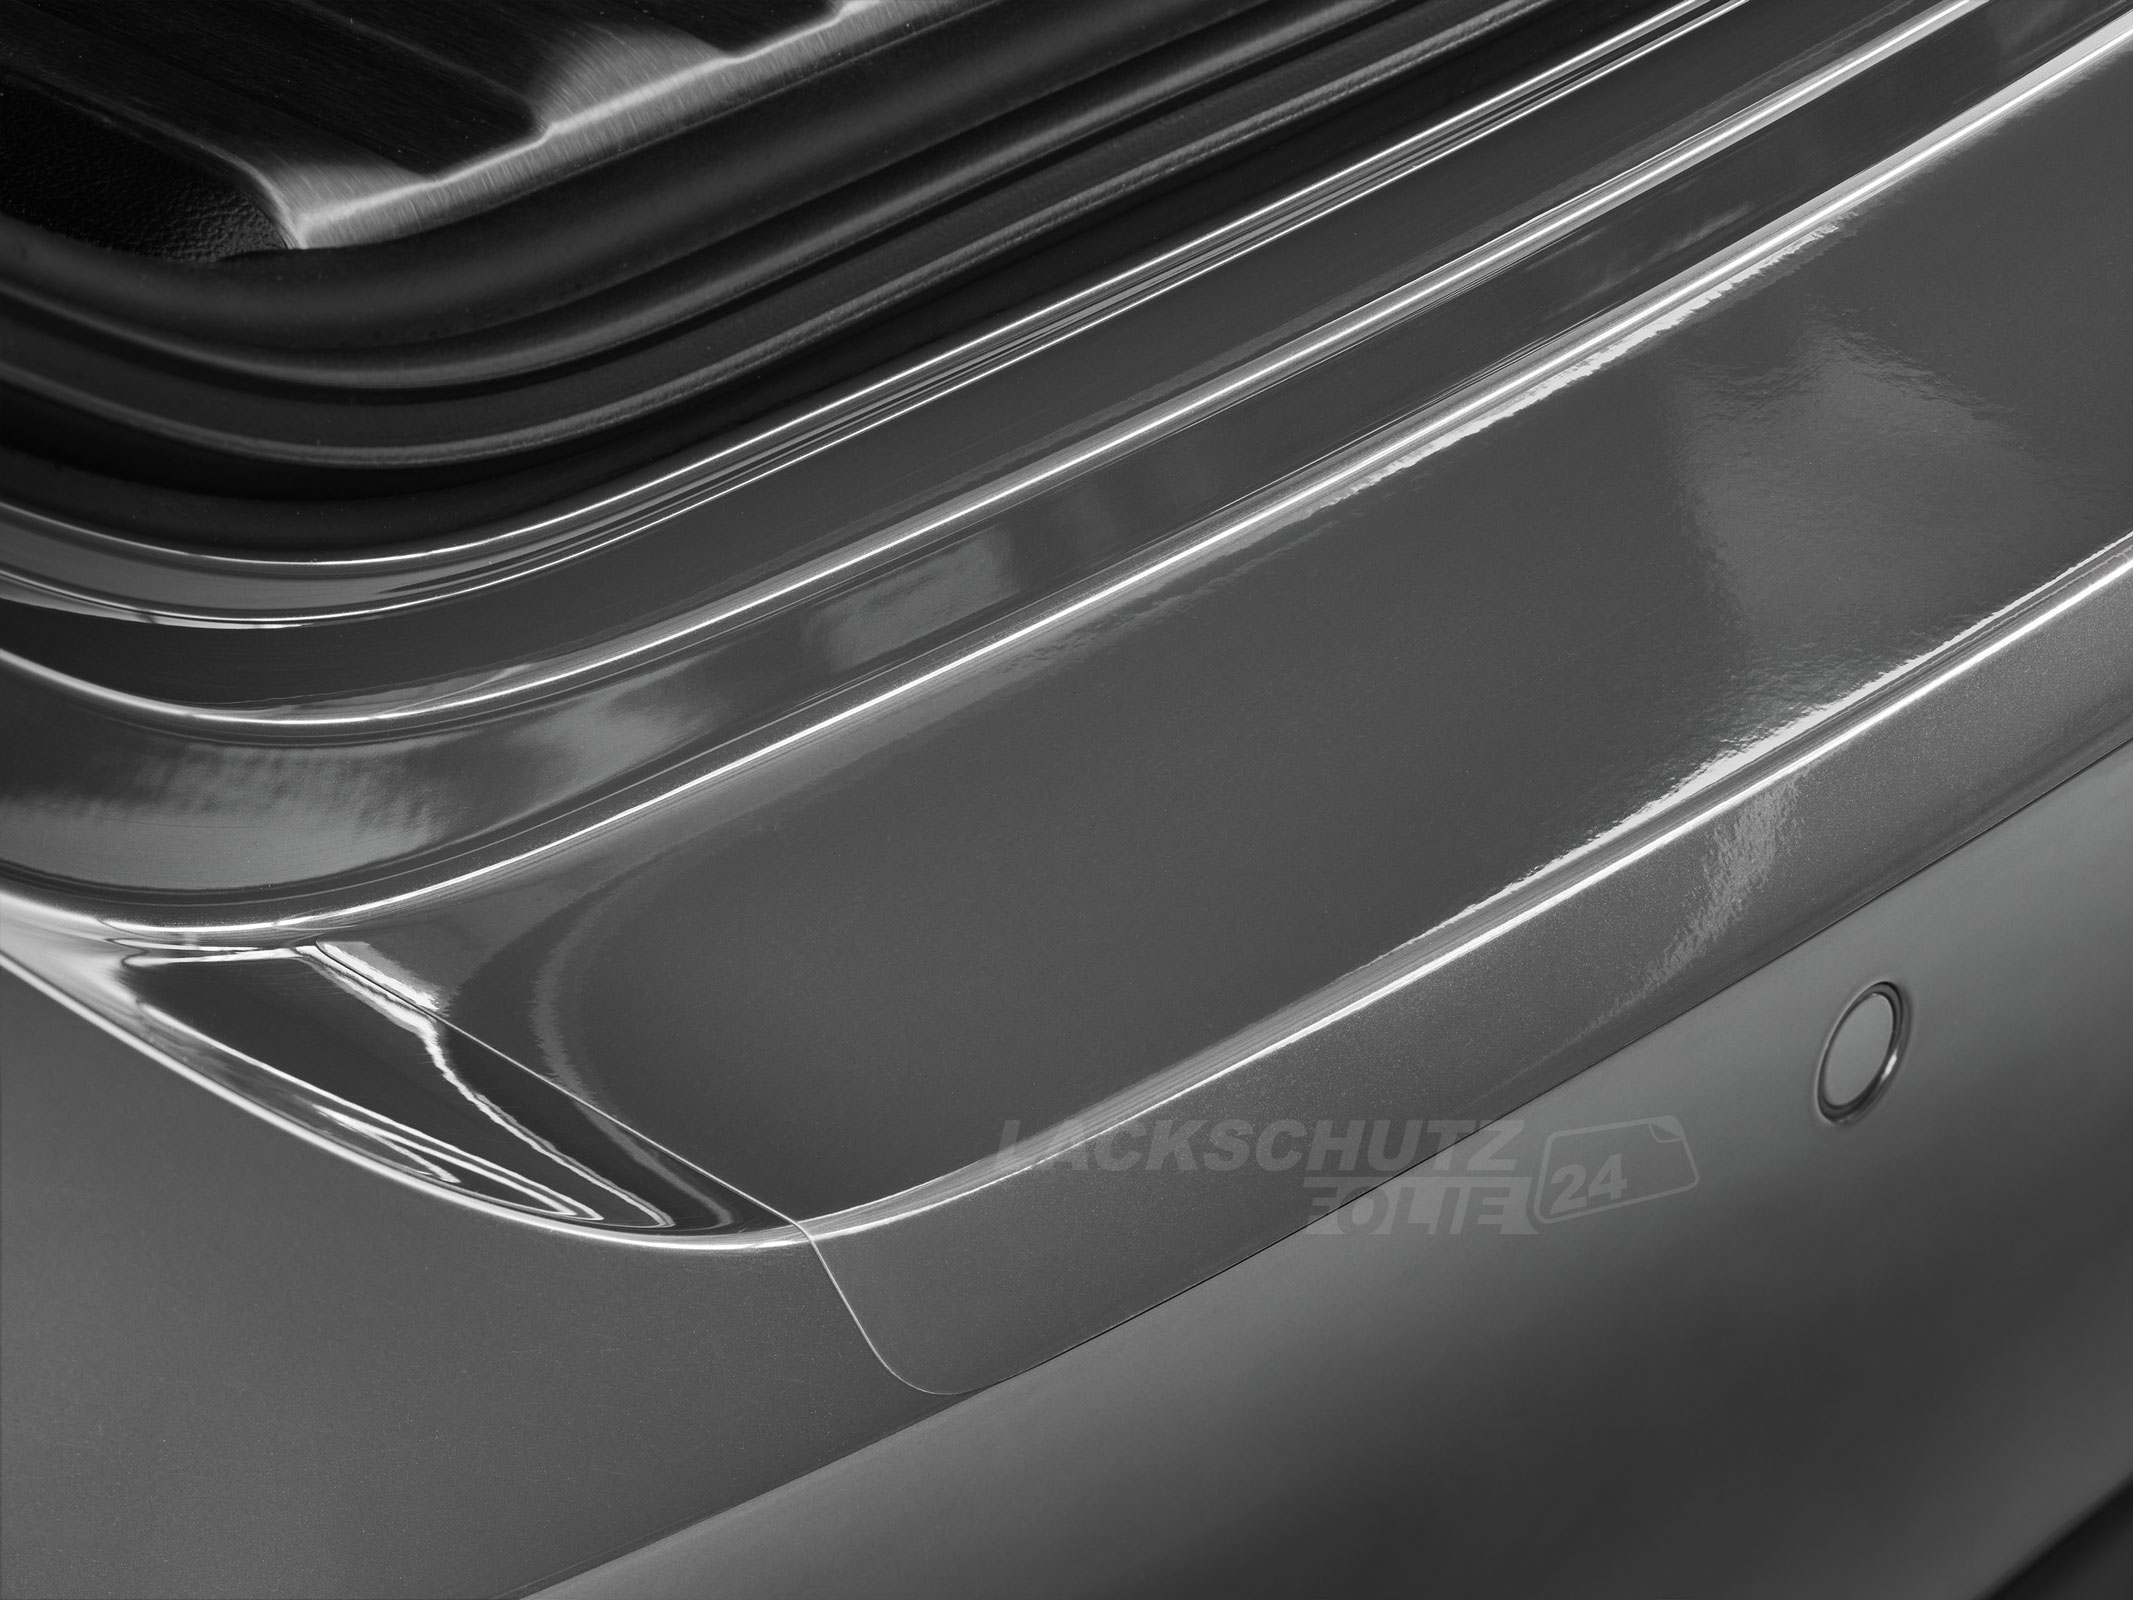 Ladekantenschutzfolie - Transparent Glatt Hochglänzend für BMW X6 Typ G06, ab BJ 11/2019